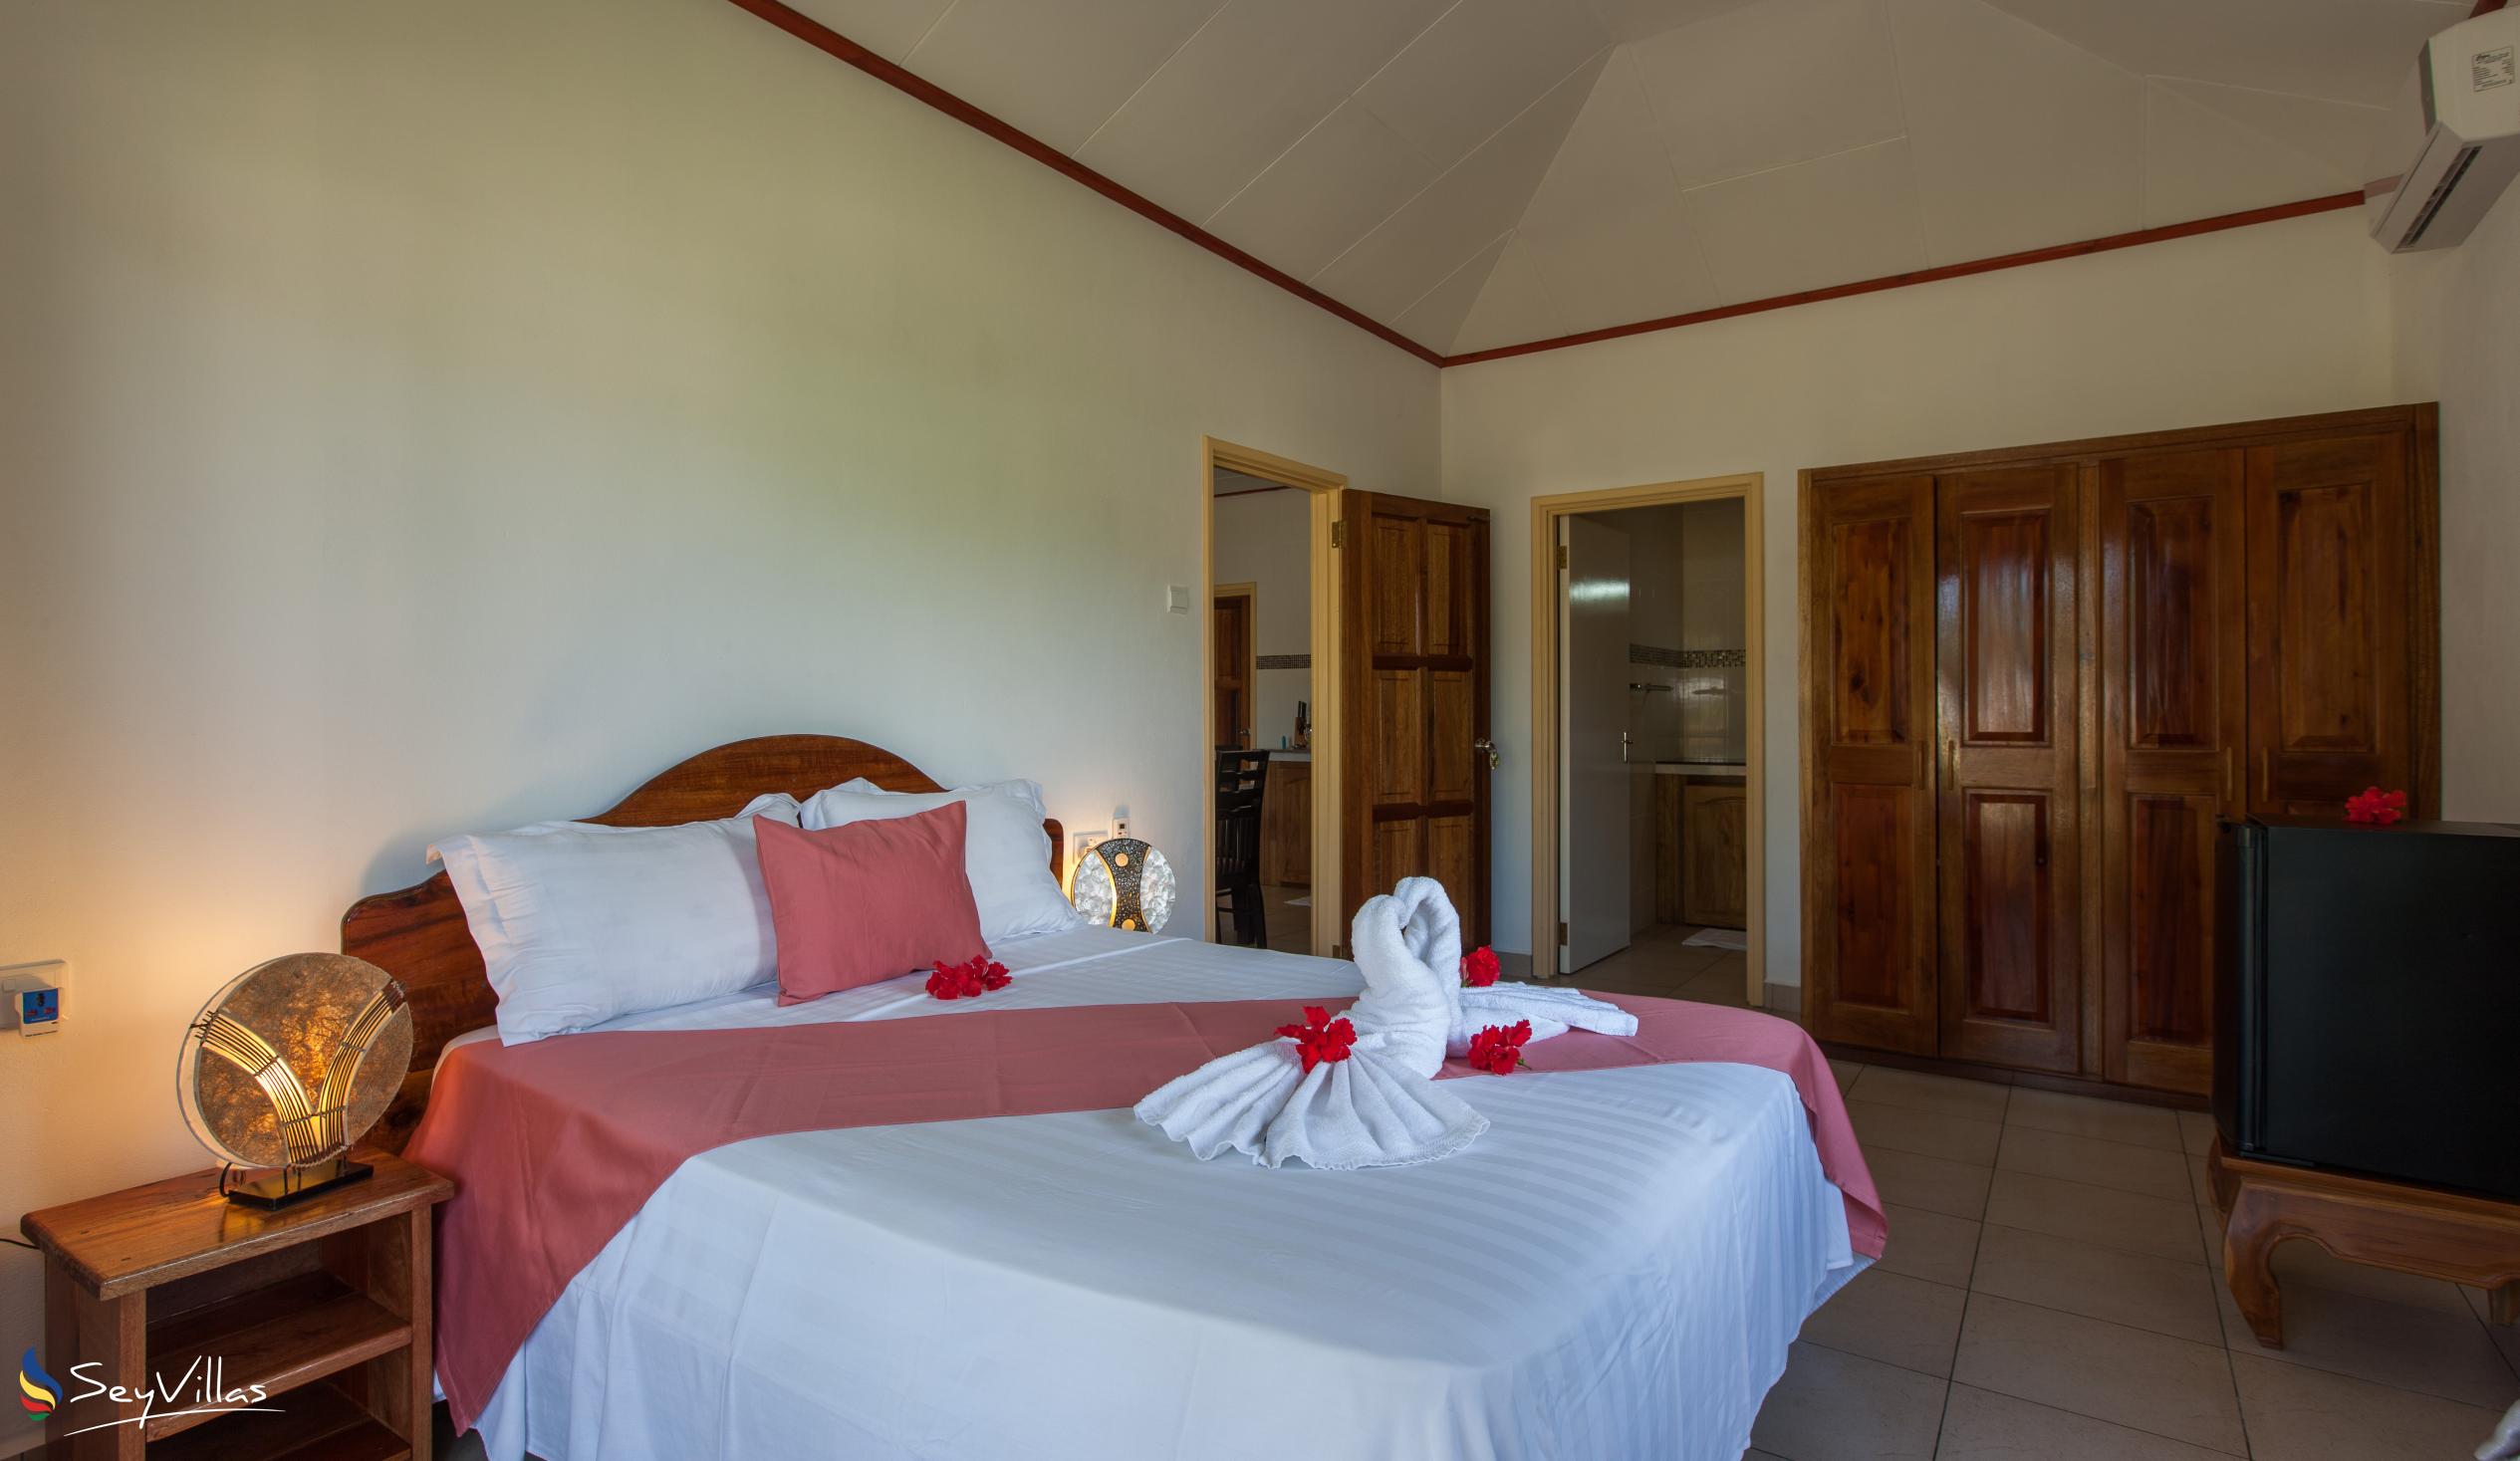 Foto 61: Hostellerie La Digue - Bungalow con 2 camere da letto - La Digue (Seychelles)